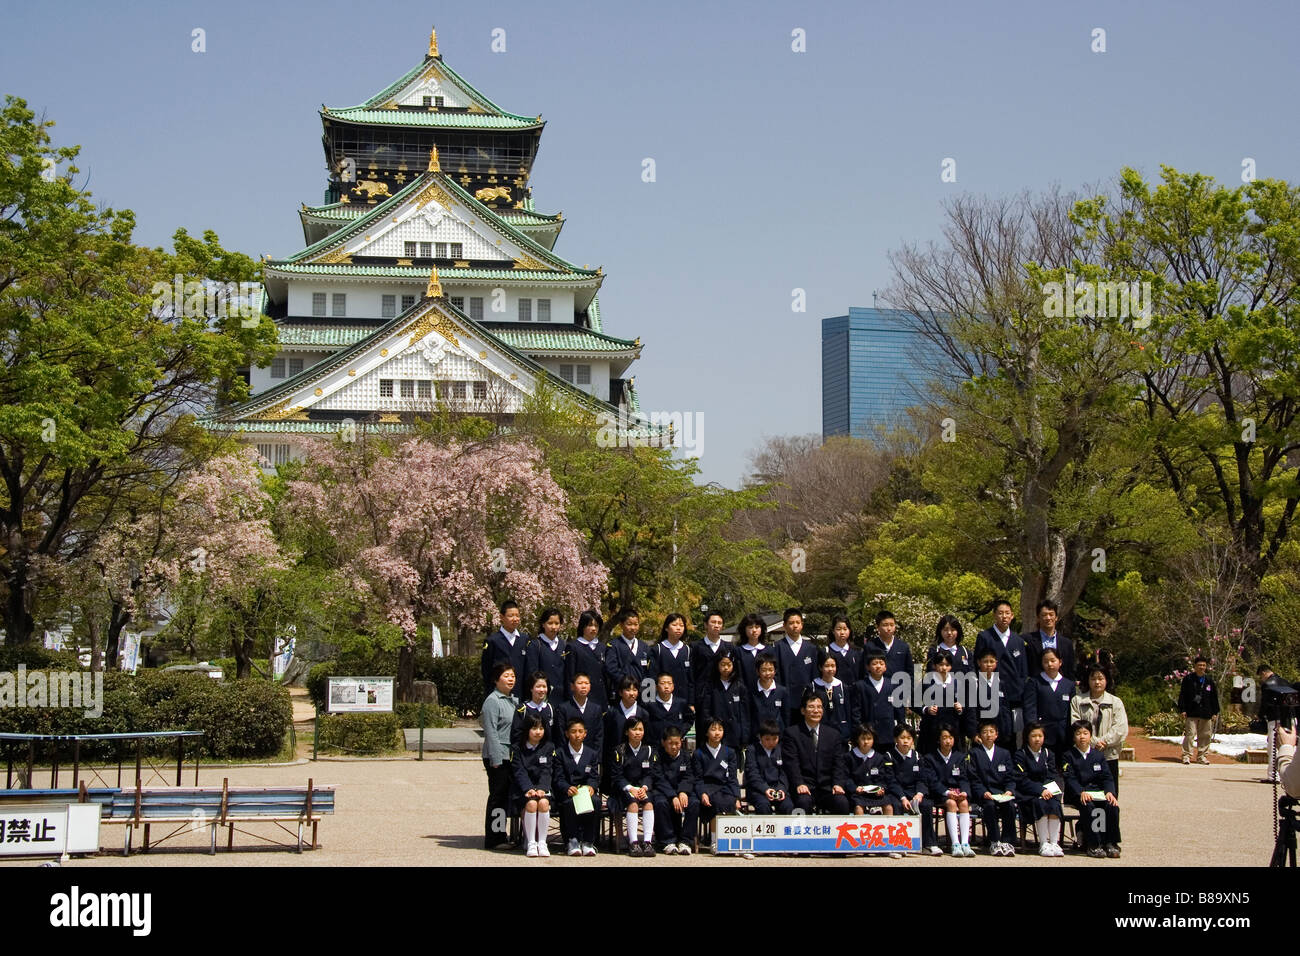 Gruppe japanischer Schulkinder in schwarzer Uniform, die vor dem Schloss Osaka und Kirschblütenbäumen für ein formelles Bild posieren. Frühling. Stockfoto